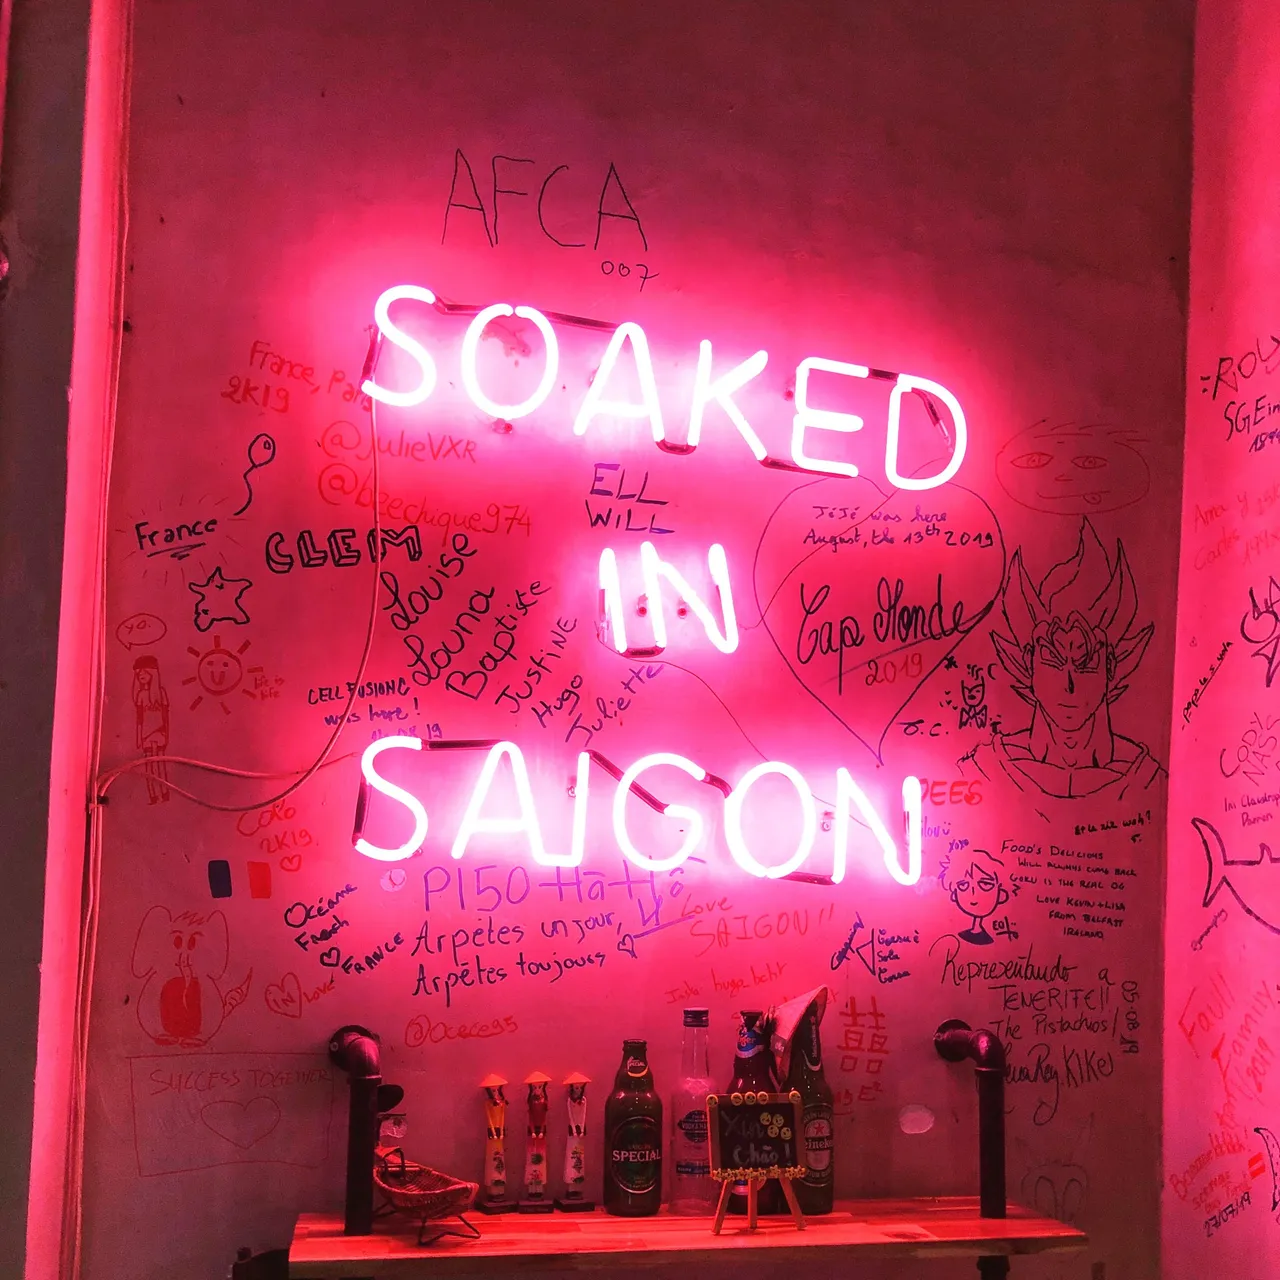 Soaked in Saigon